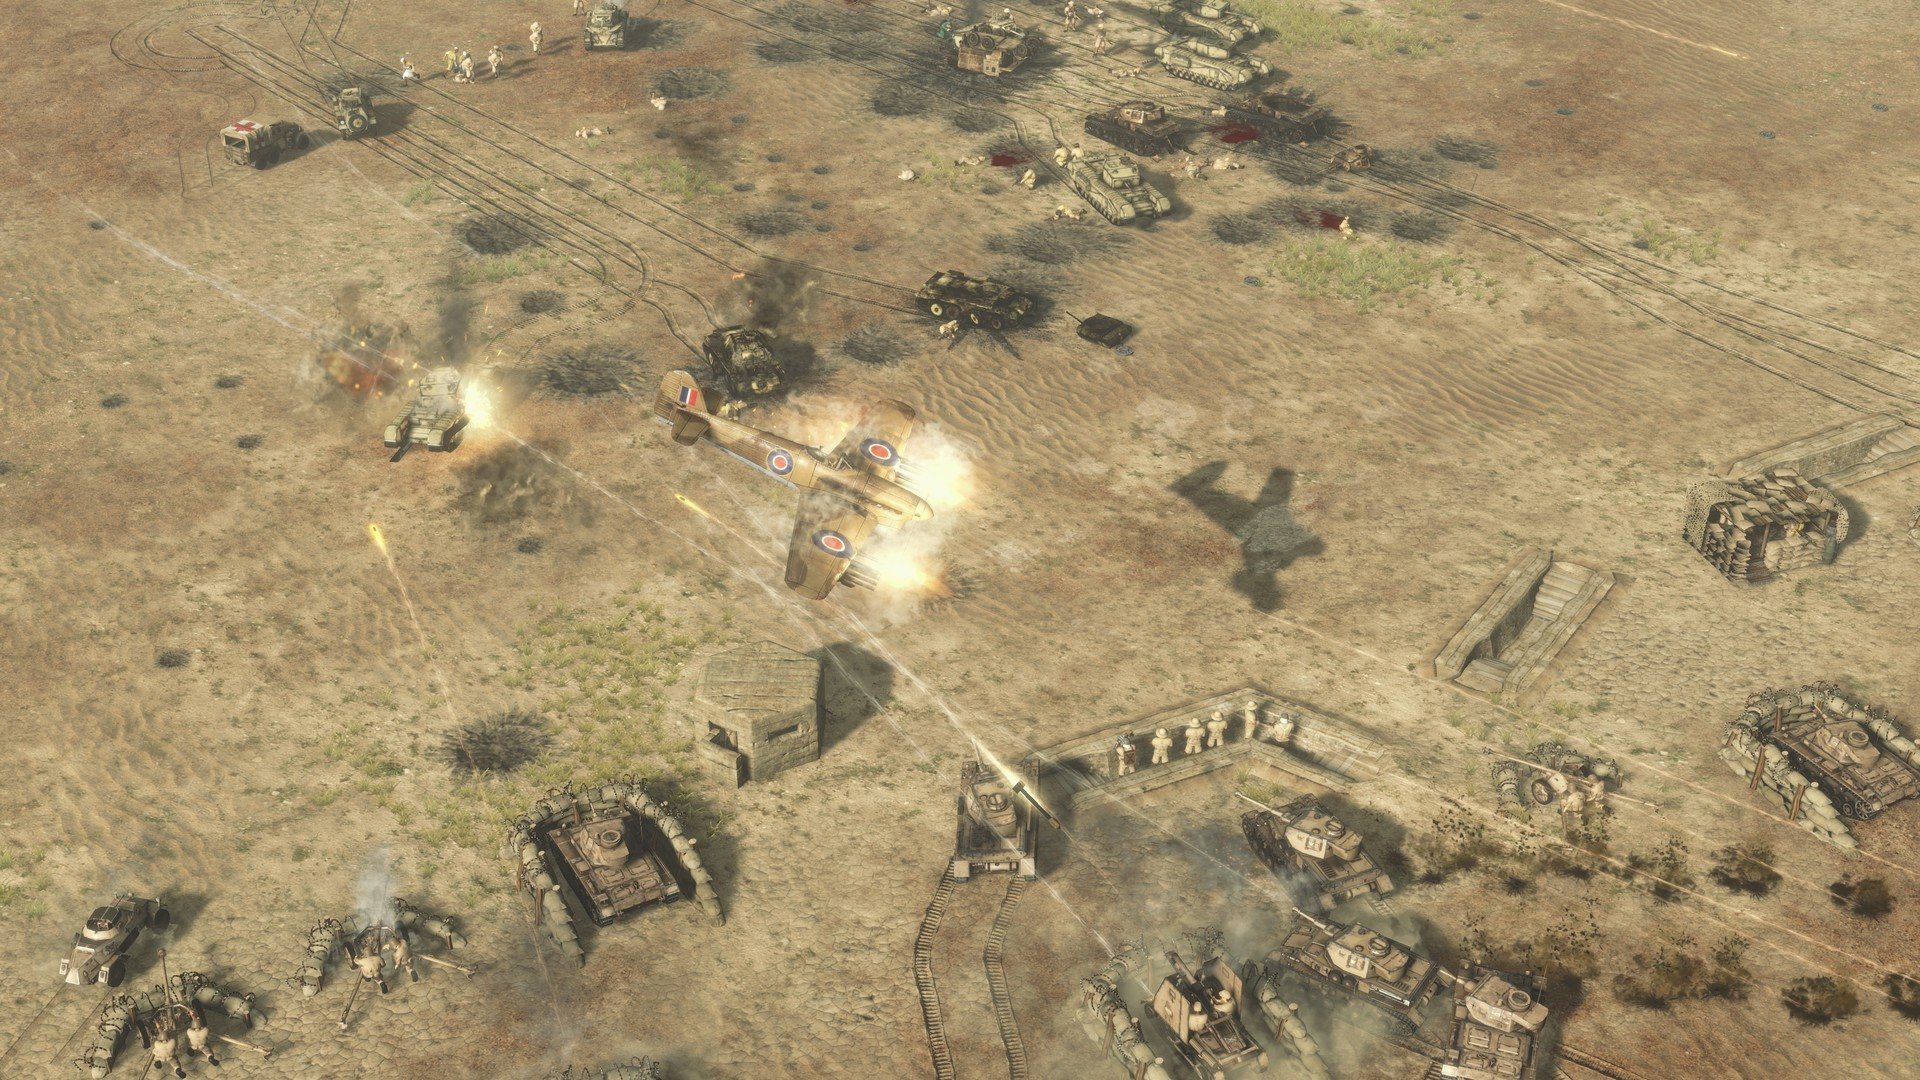 Sudden Strike 4 - Africa: Desert War DLC Steam CD Key 1.8 $